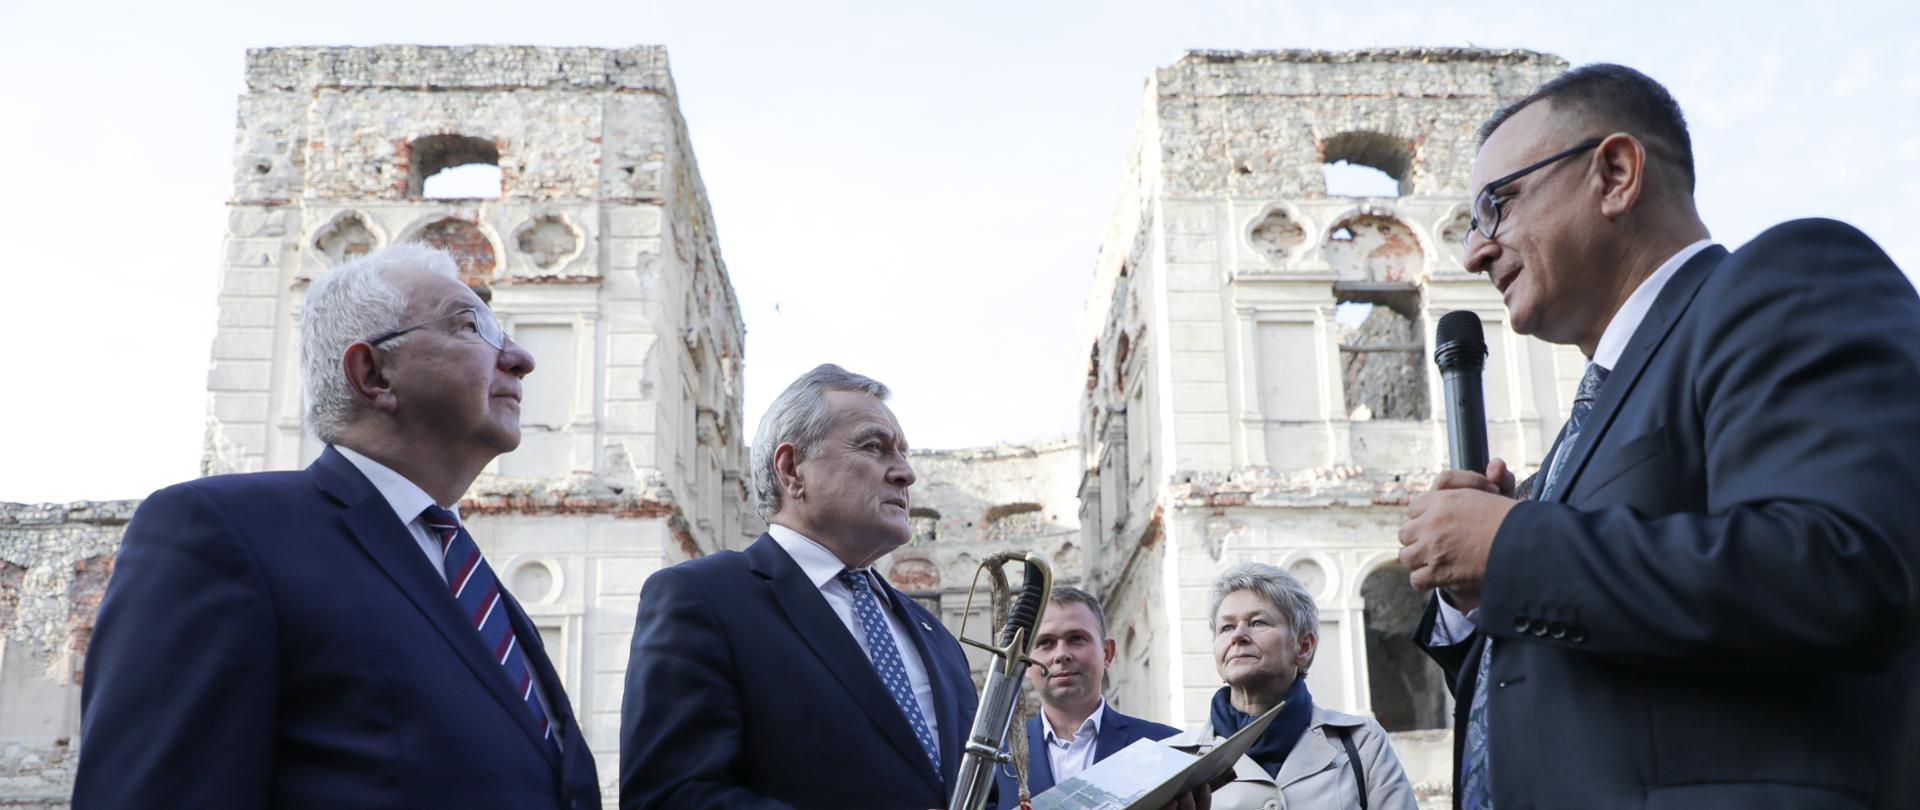 Wicepremier Piotr Gliński zwiedził ruiny Zamku Krzyżtopór w Ujeździe, fot. Danuta Matloch